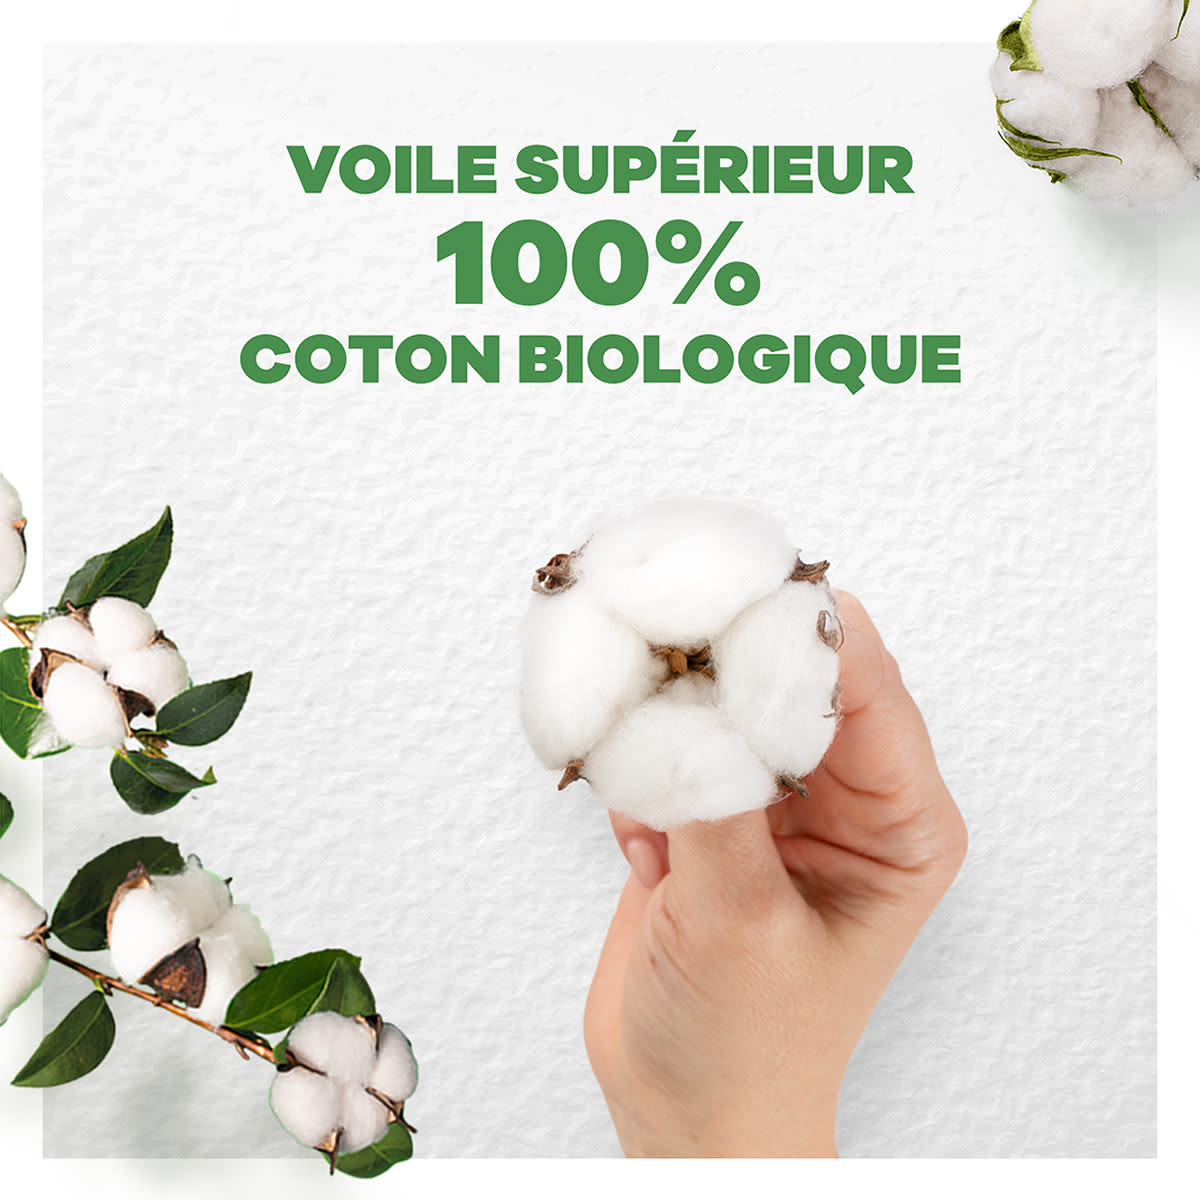 Always Cotton Protection serviettes protection fiable avec un voile supérieur 100% coton biologique